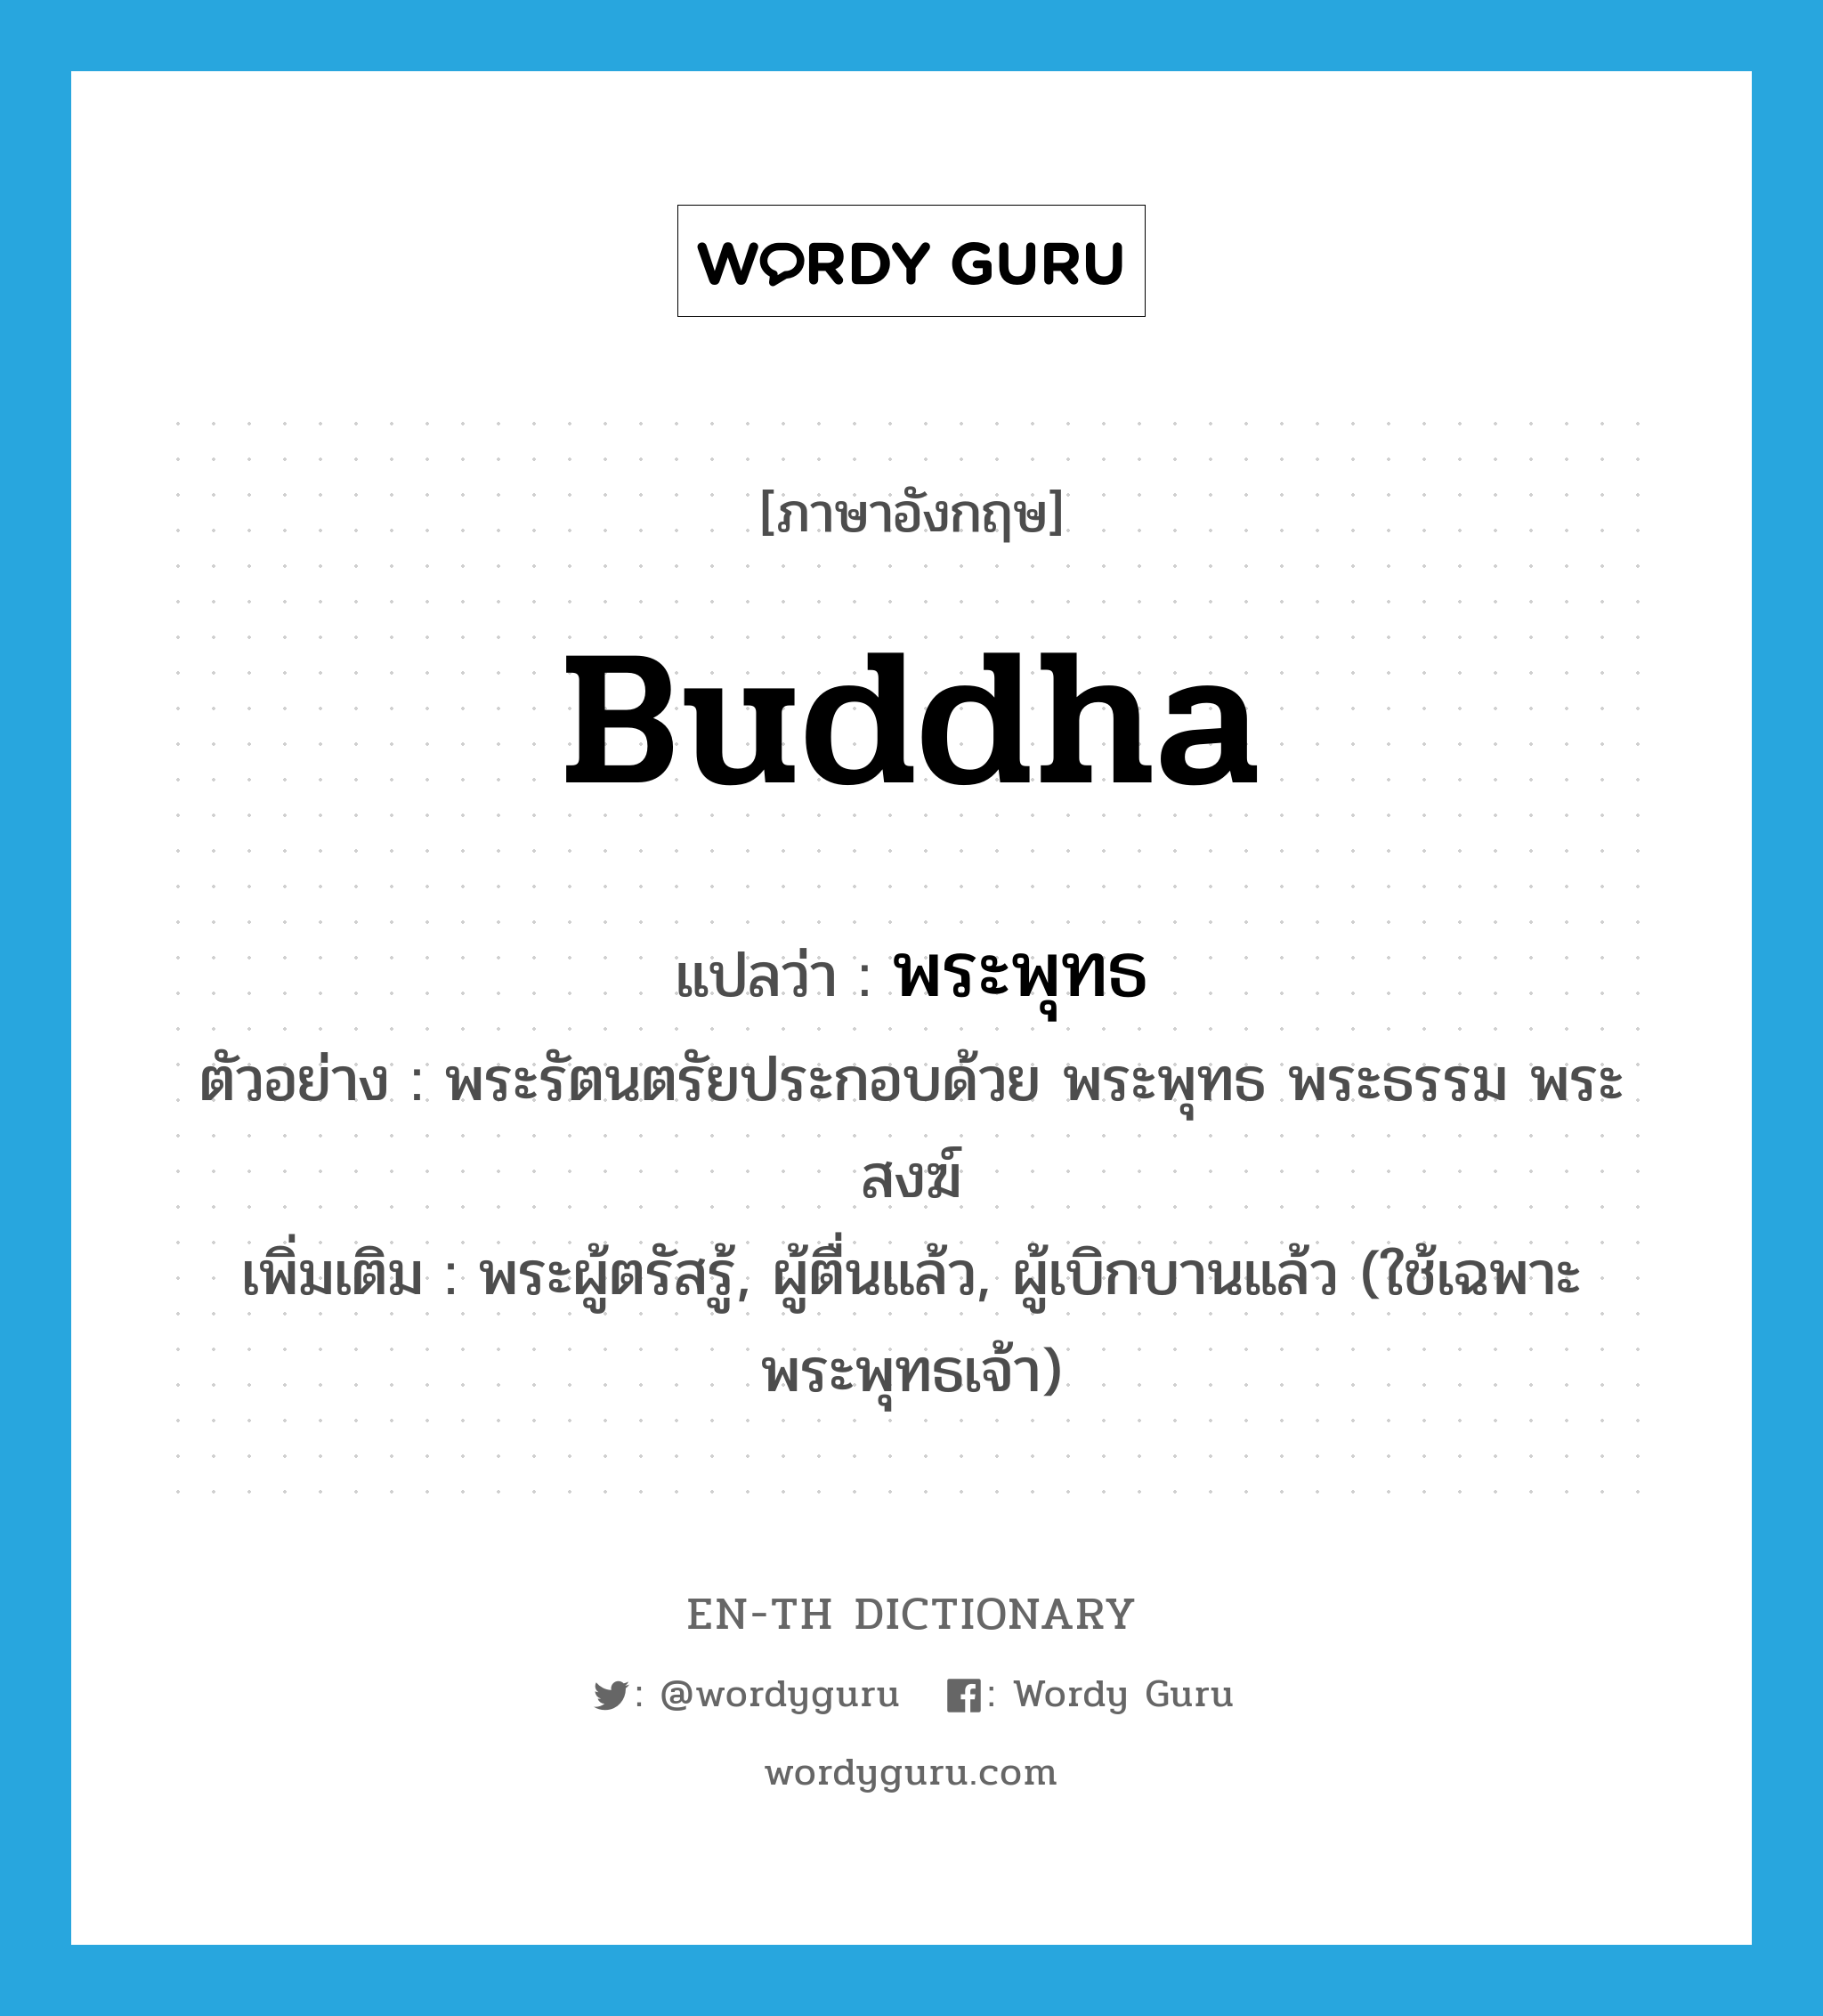 Buddha แปลว่า?, คำศัพท์ภาษาอังกฤษ Buddha แปลว่า พระพุทธ ประเภท N ตัวอย่าง พระรัตนตรัยประกอบด้วย พระพุทธ พระธรรม พระสงฆ์ เพิ่มเติม พระผู้ตรัสรู้, ผู้ตื่นแล้ว, ผู้เบิกบานแล้ว (ใช้เฉพาะพระพุทธเจ้า) หมวด N